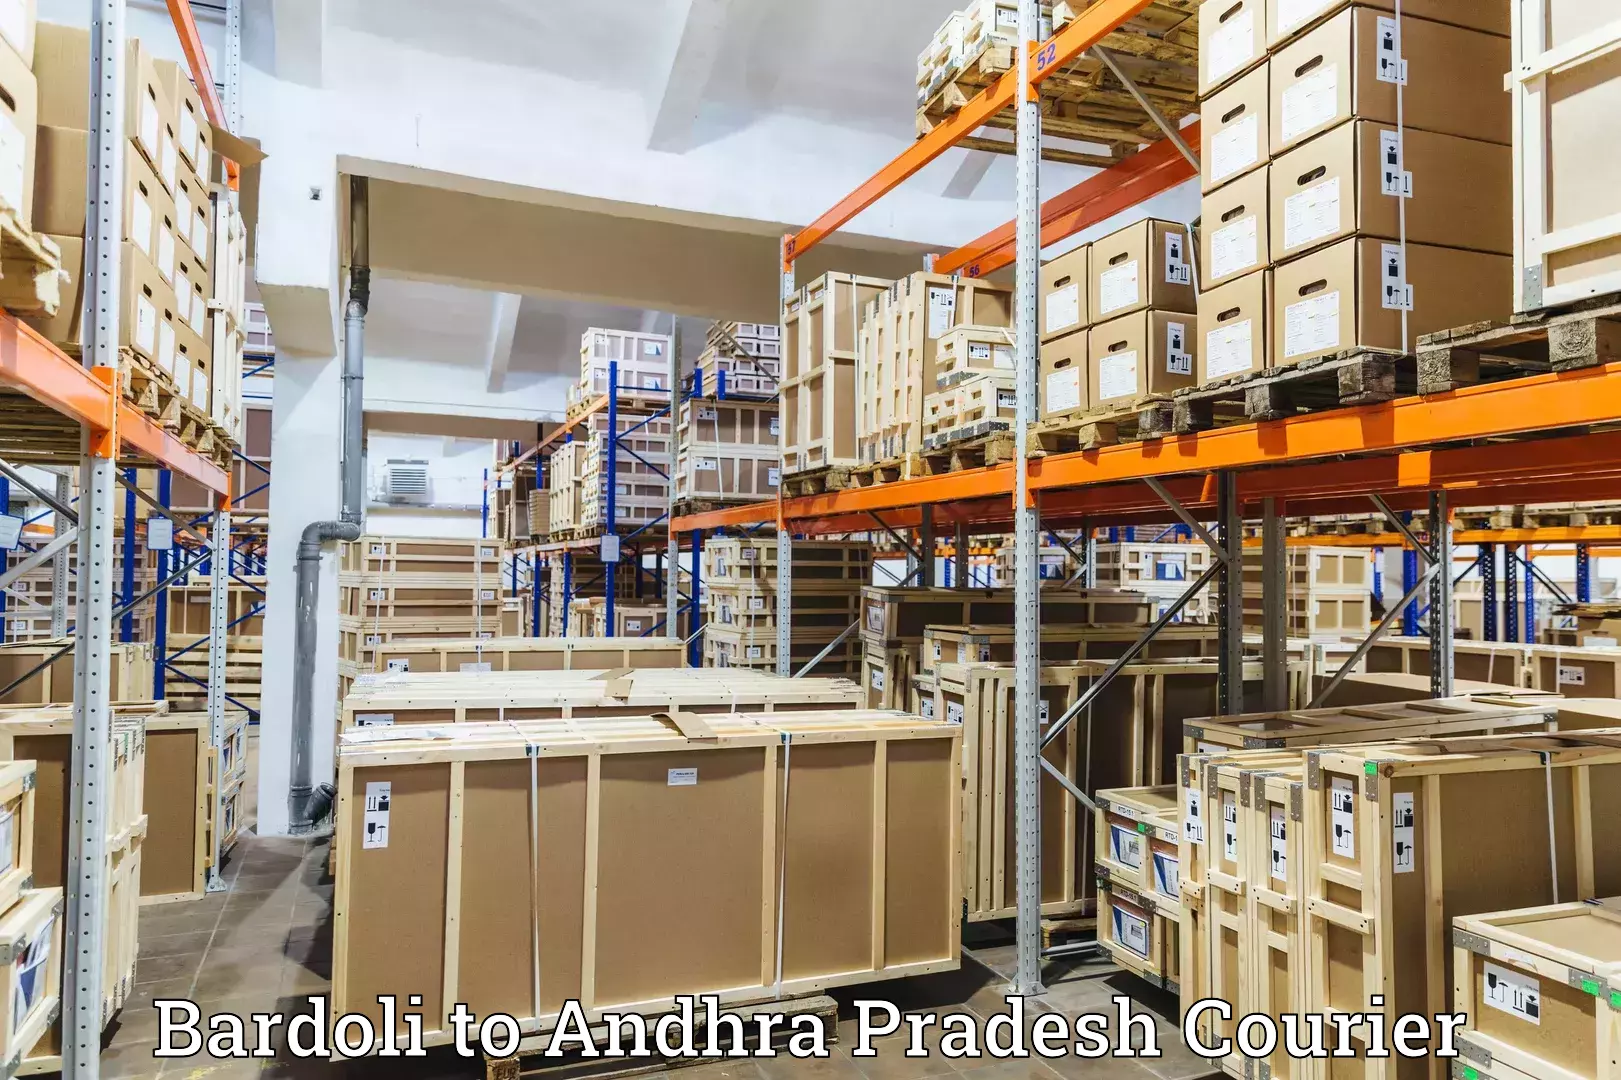 Cross-border shipping Bardoli to Andhra Pradesh